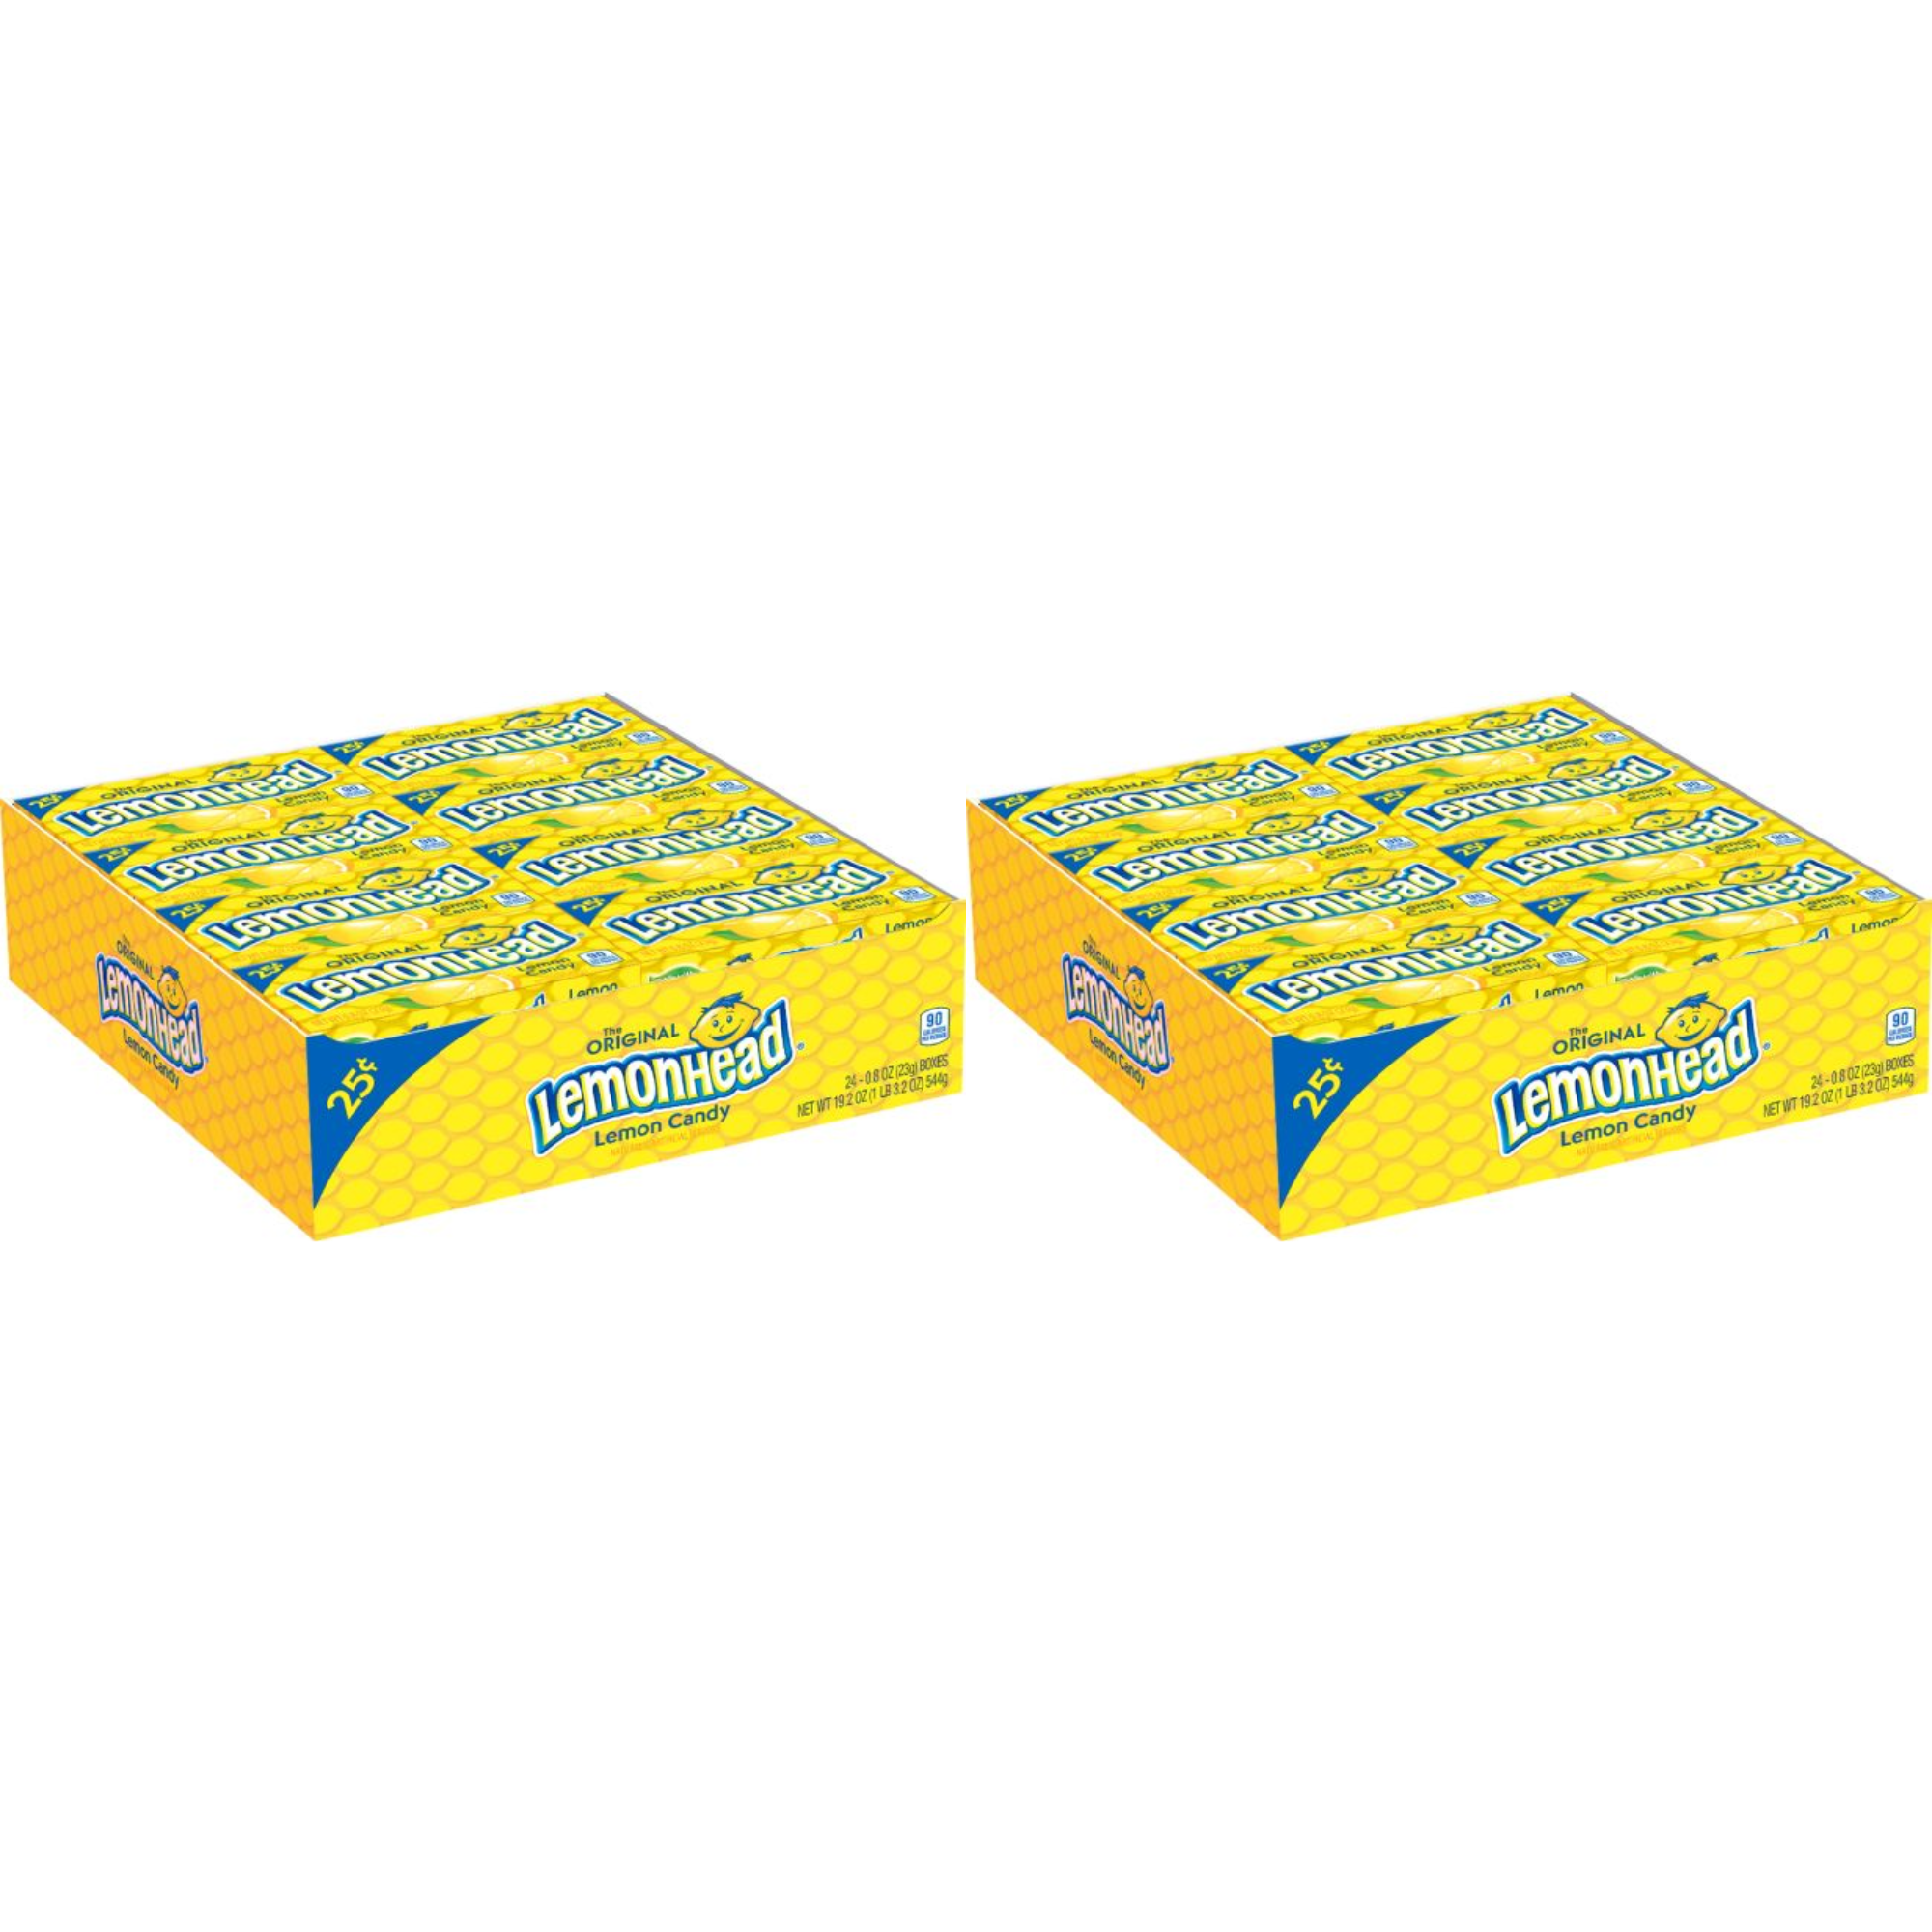 Lemon Fruit Purée 44 Lb bag in box